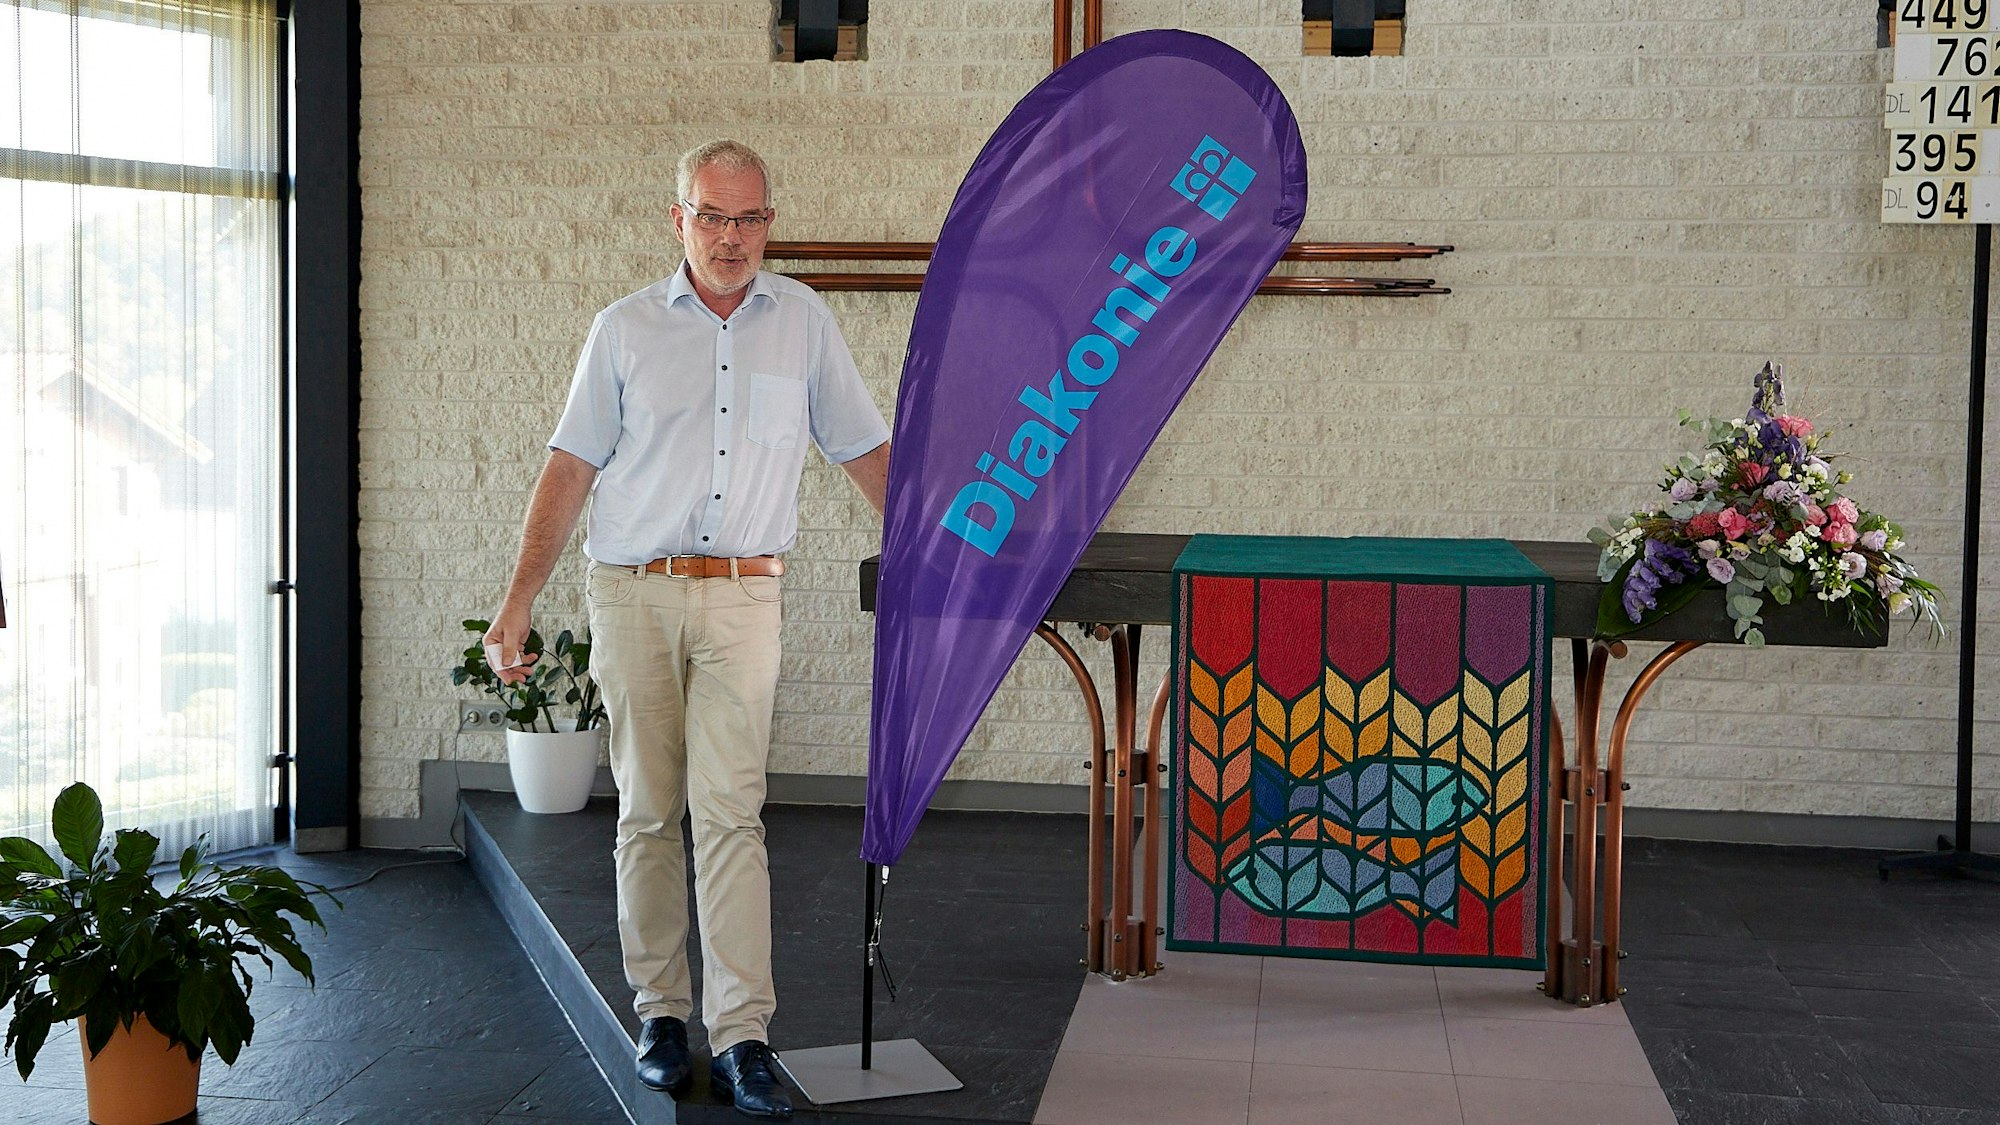 Malte Duisberg steht am Alter der entwidmeten Kirche und begrüßt an einer lilafarbenen Diakonie-Fahne die Anwesenden als neuer Hausherr.